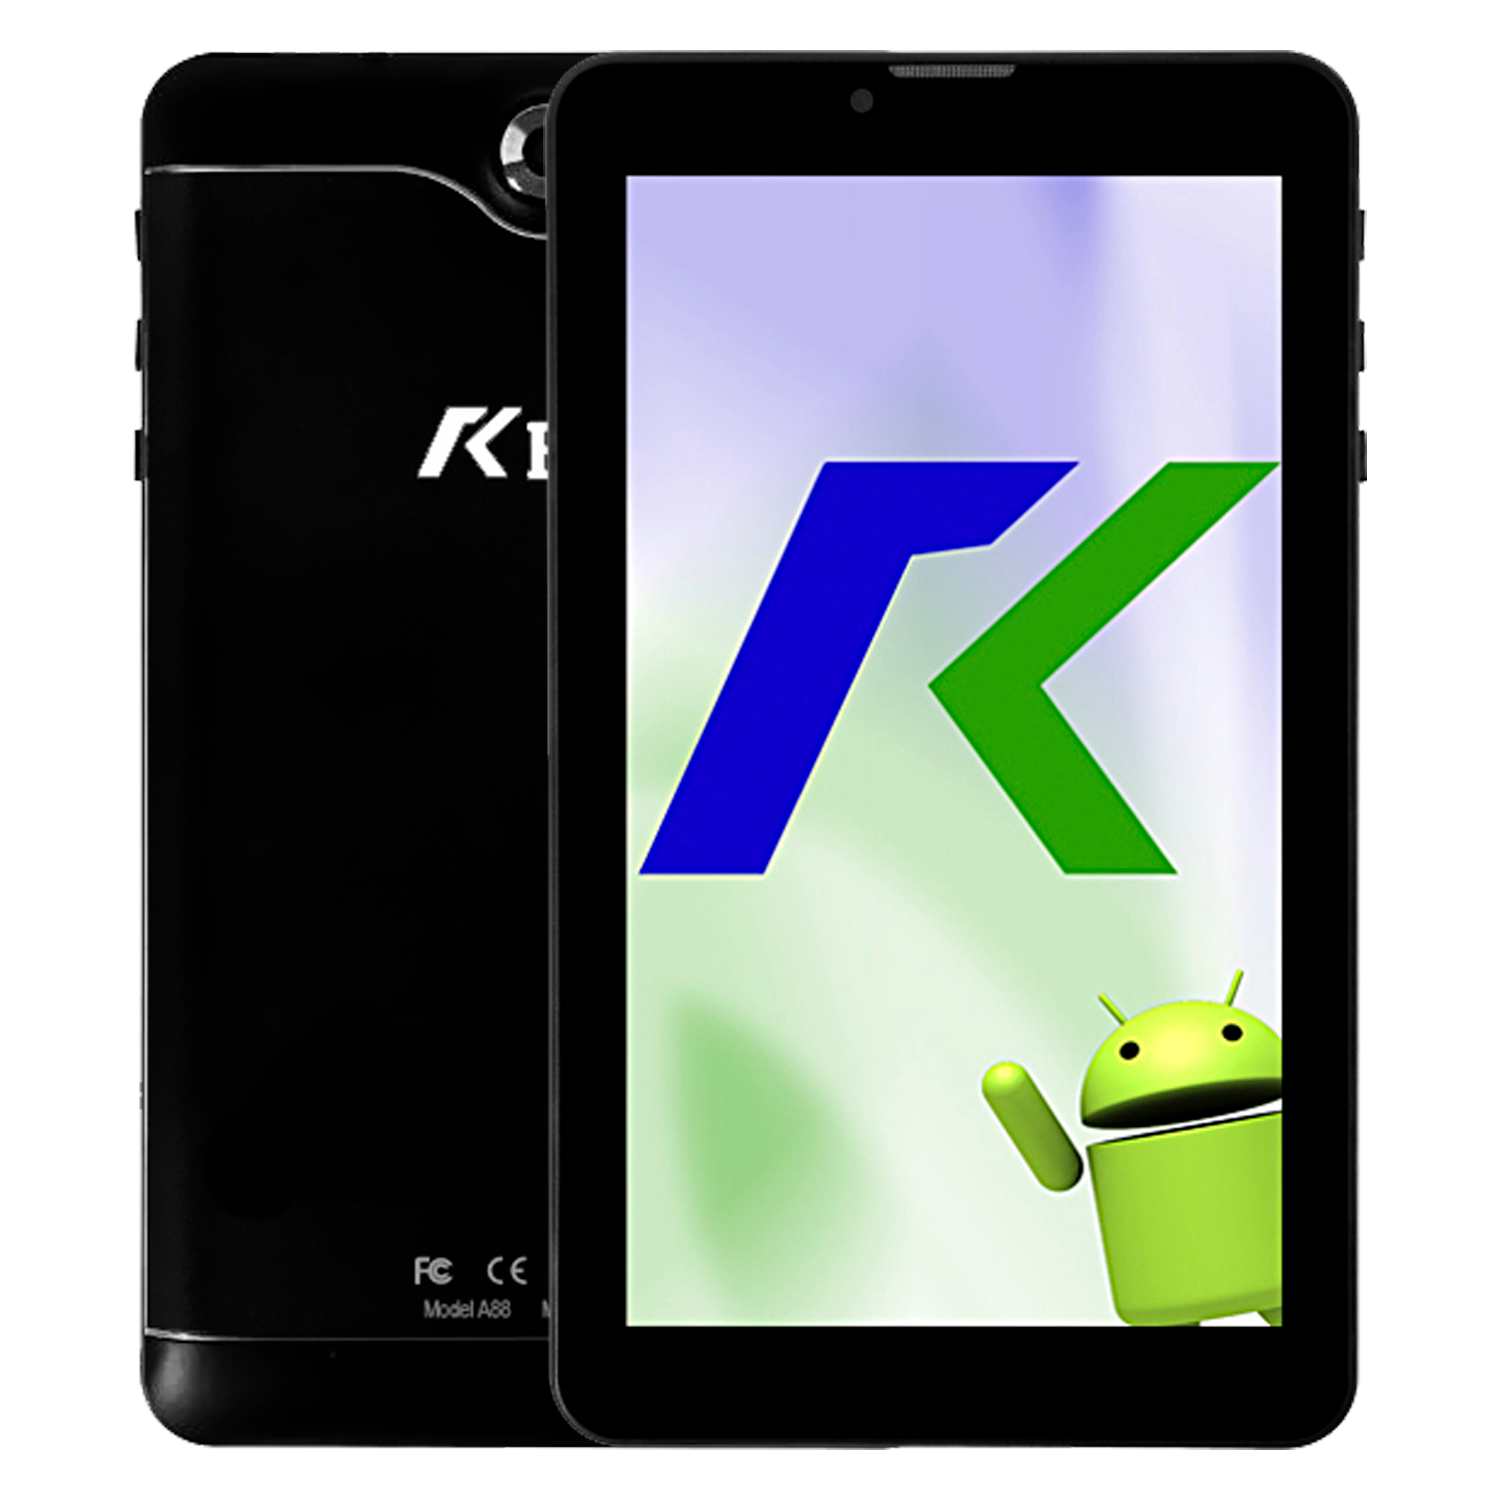 Tablet Keen A88 32GB / 1GB RAM / Dual SIM / Tela 7" / Câmeras 2MP e VGA - Preto